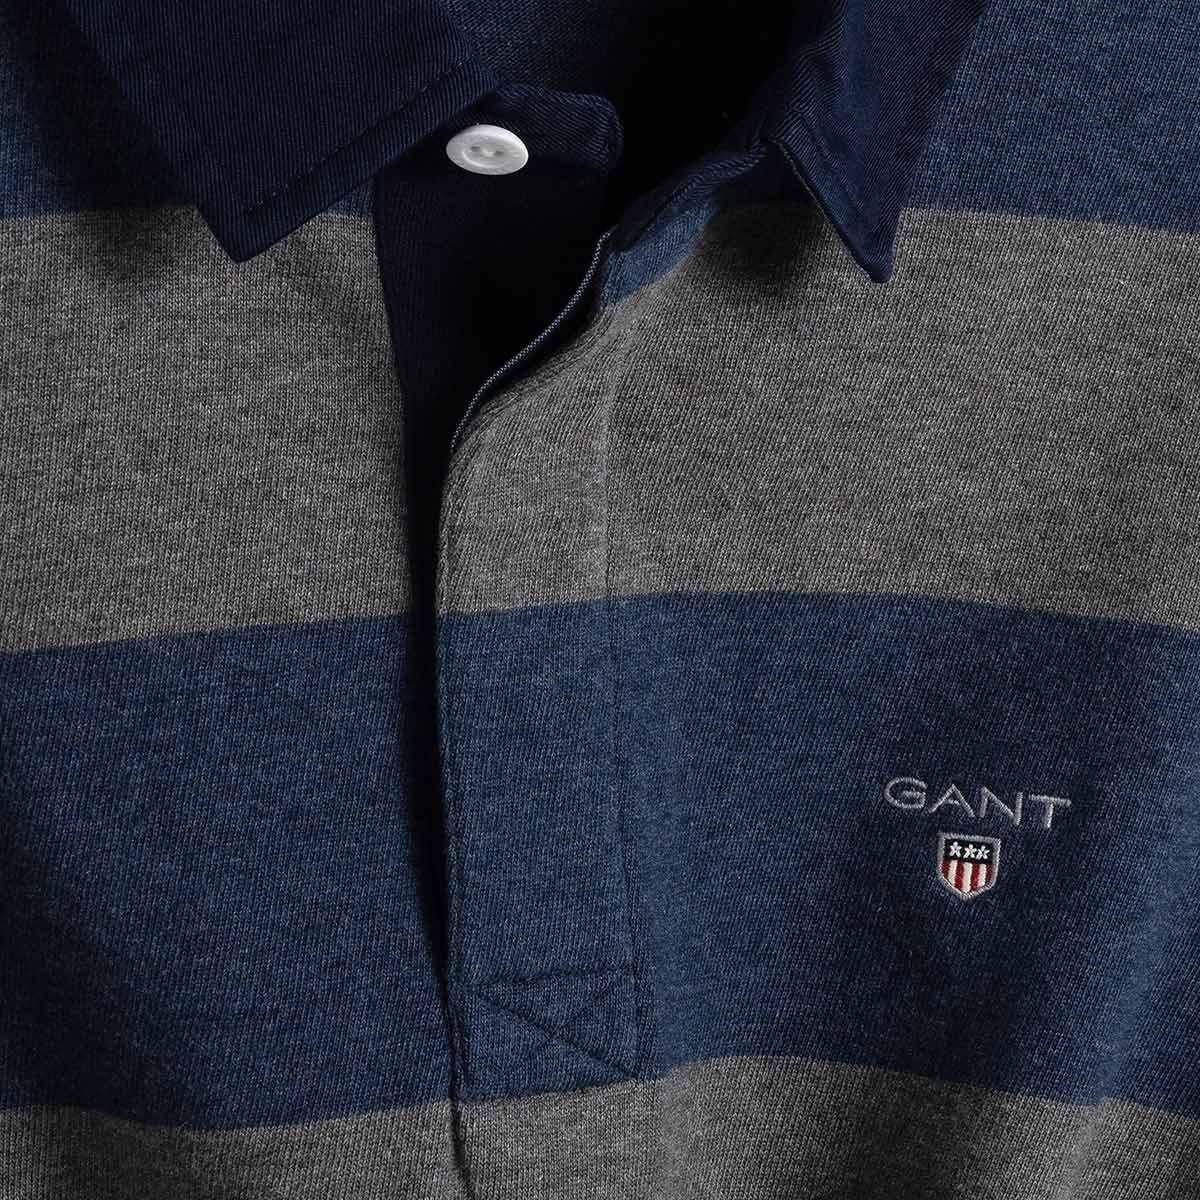 Gant Langarm-Poloshirt »2005051« Herren Poloshirt gestreift Original  Barstripe Heavy Rugger aus Baumwolle online kaufen | OTTO